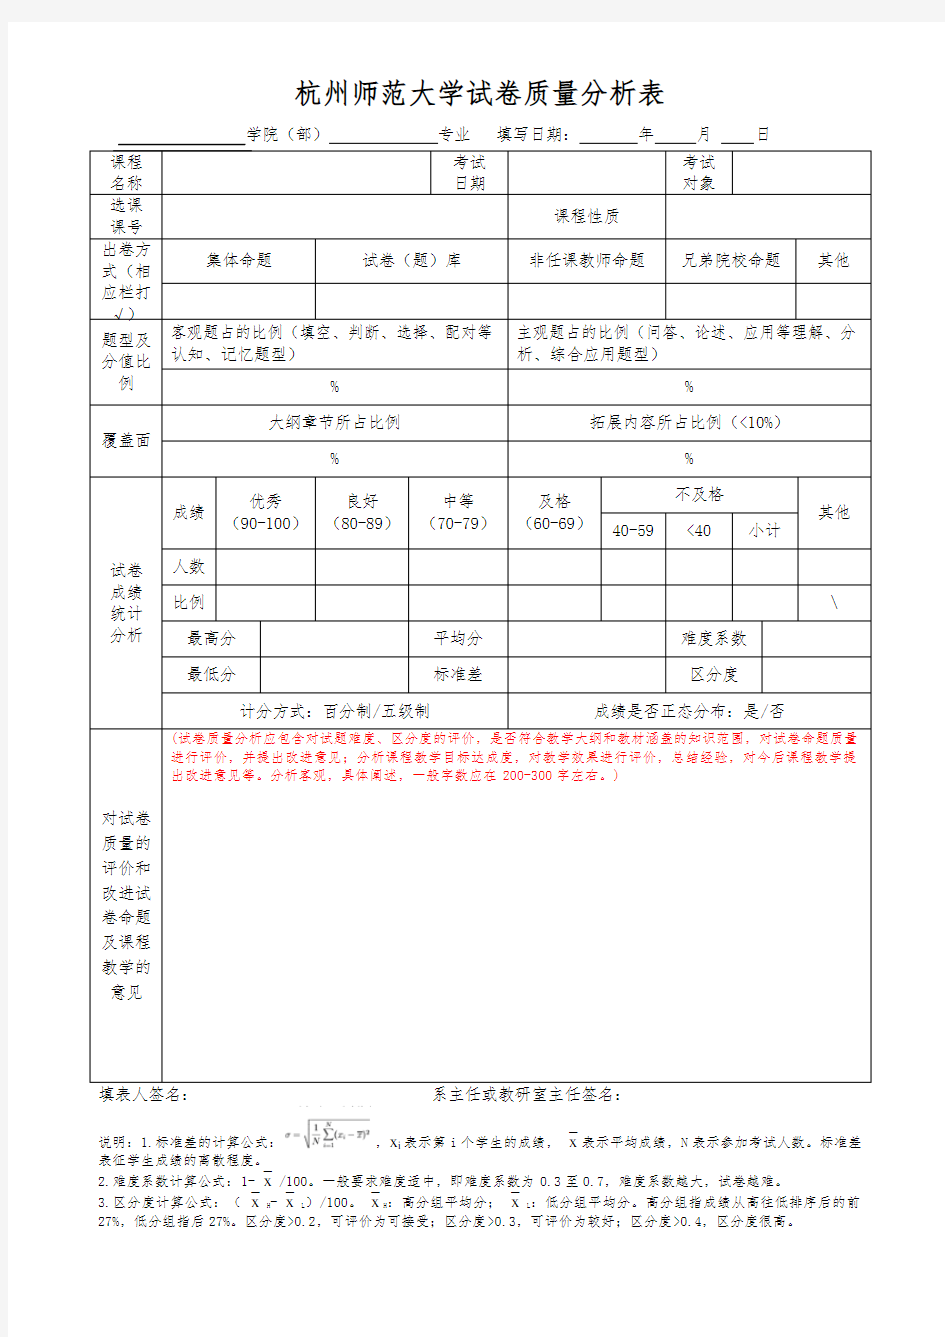 ★杭州师范大学试卷质量分析表2020.1